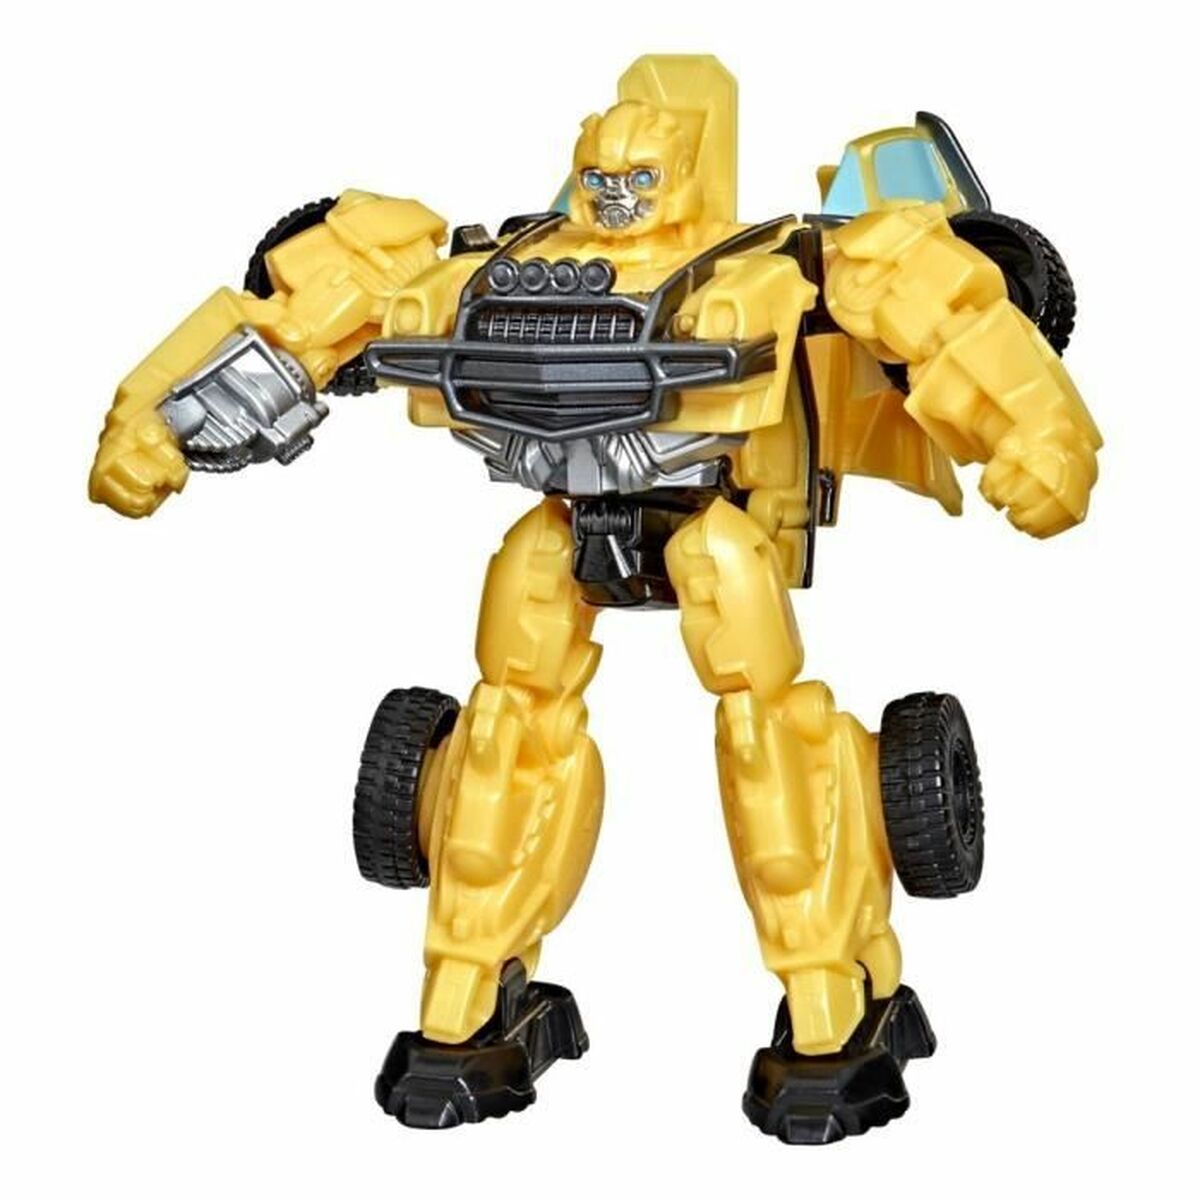 Robot Hasbro Bumblebee